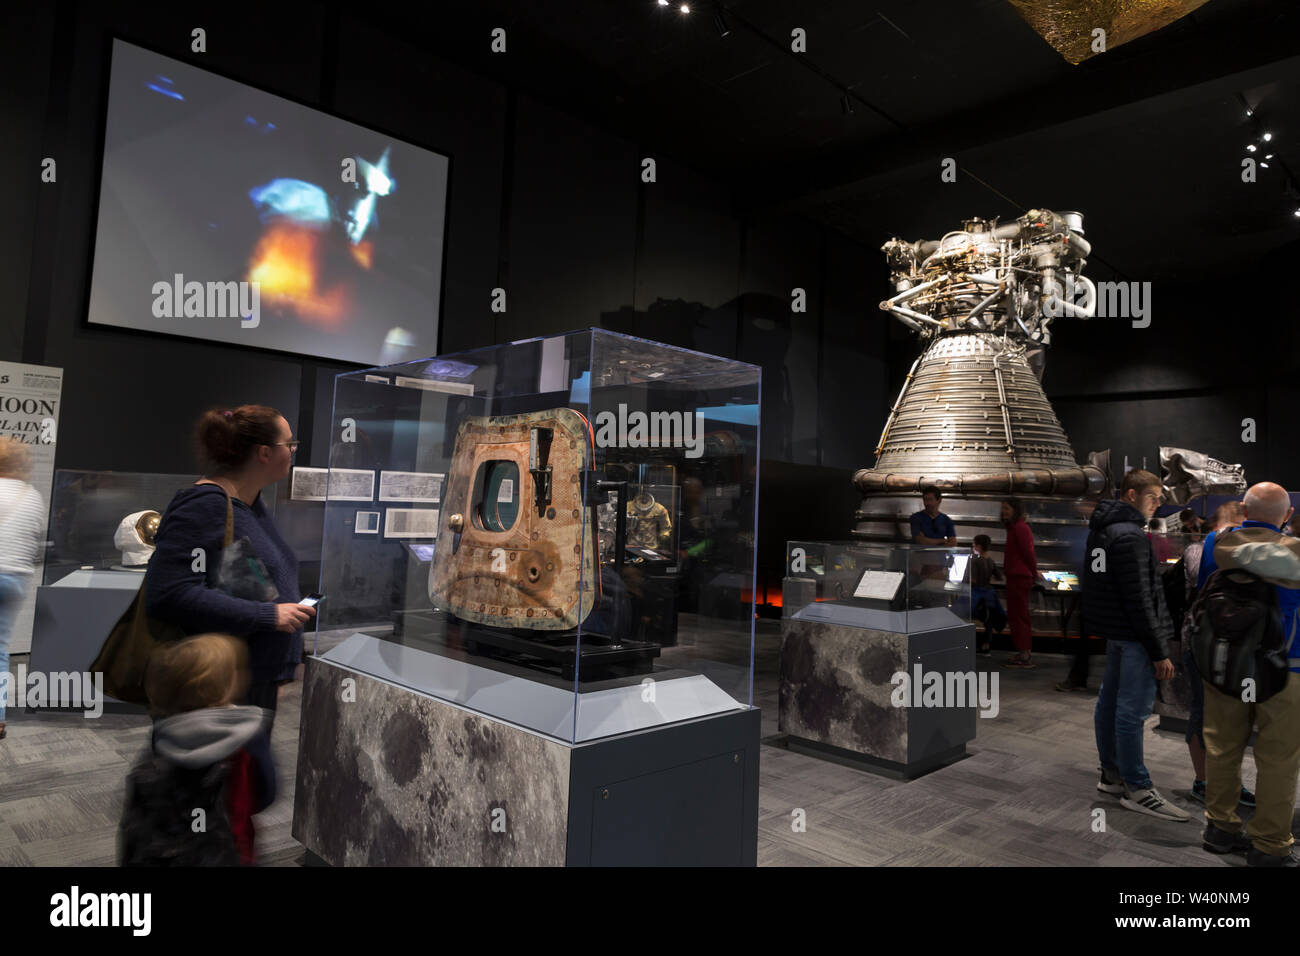 Visiteurs à l'exposition "Destination Lune" au Museum of Flight à Seattle, Washington le 18 juillet 2019. L'exposition, présentée en partenariat avec le Smithsonian Institution, célèbre la mission Apollo 11 au cours de la 50e anniversaire de l'alunissage. Banque D'Images